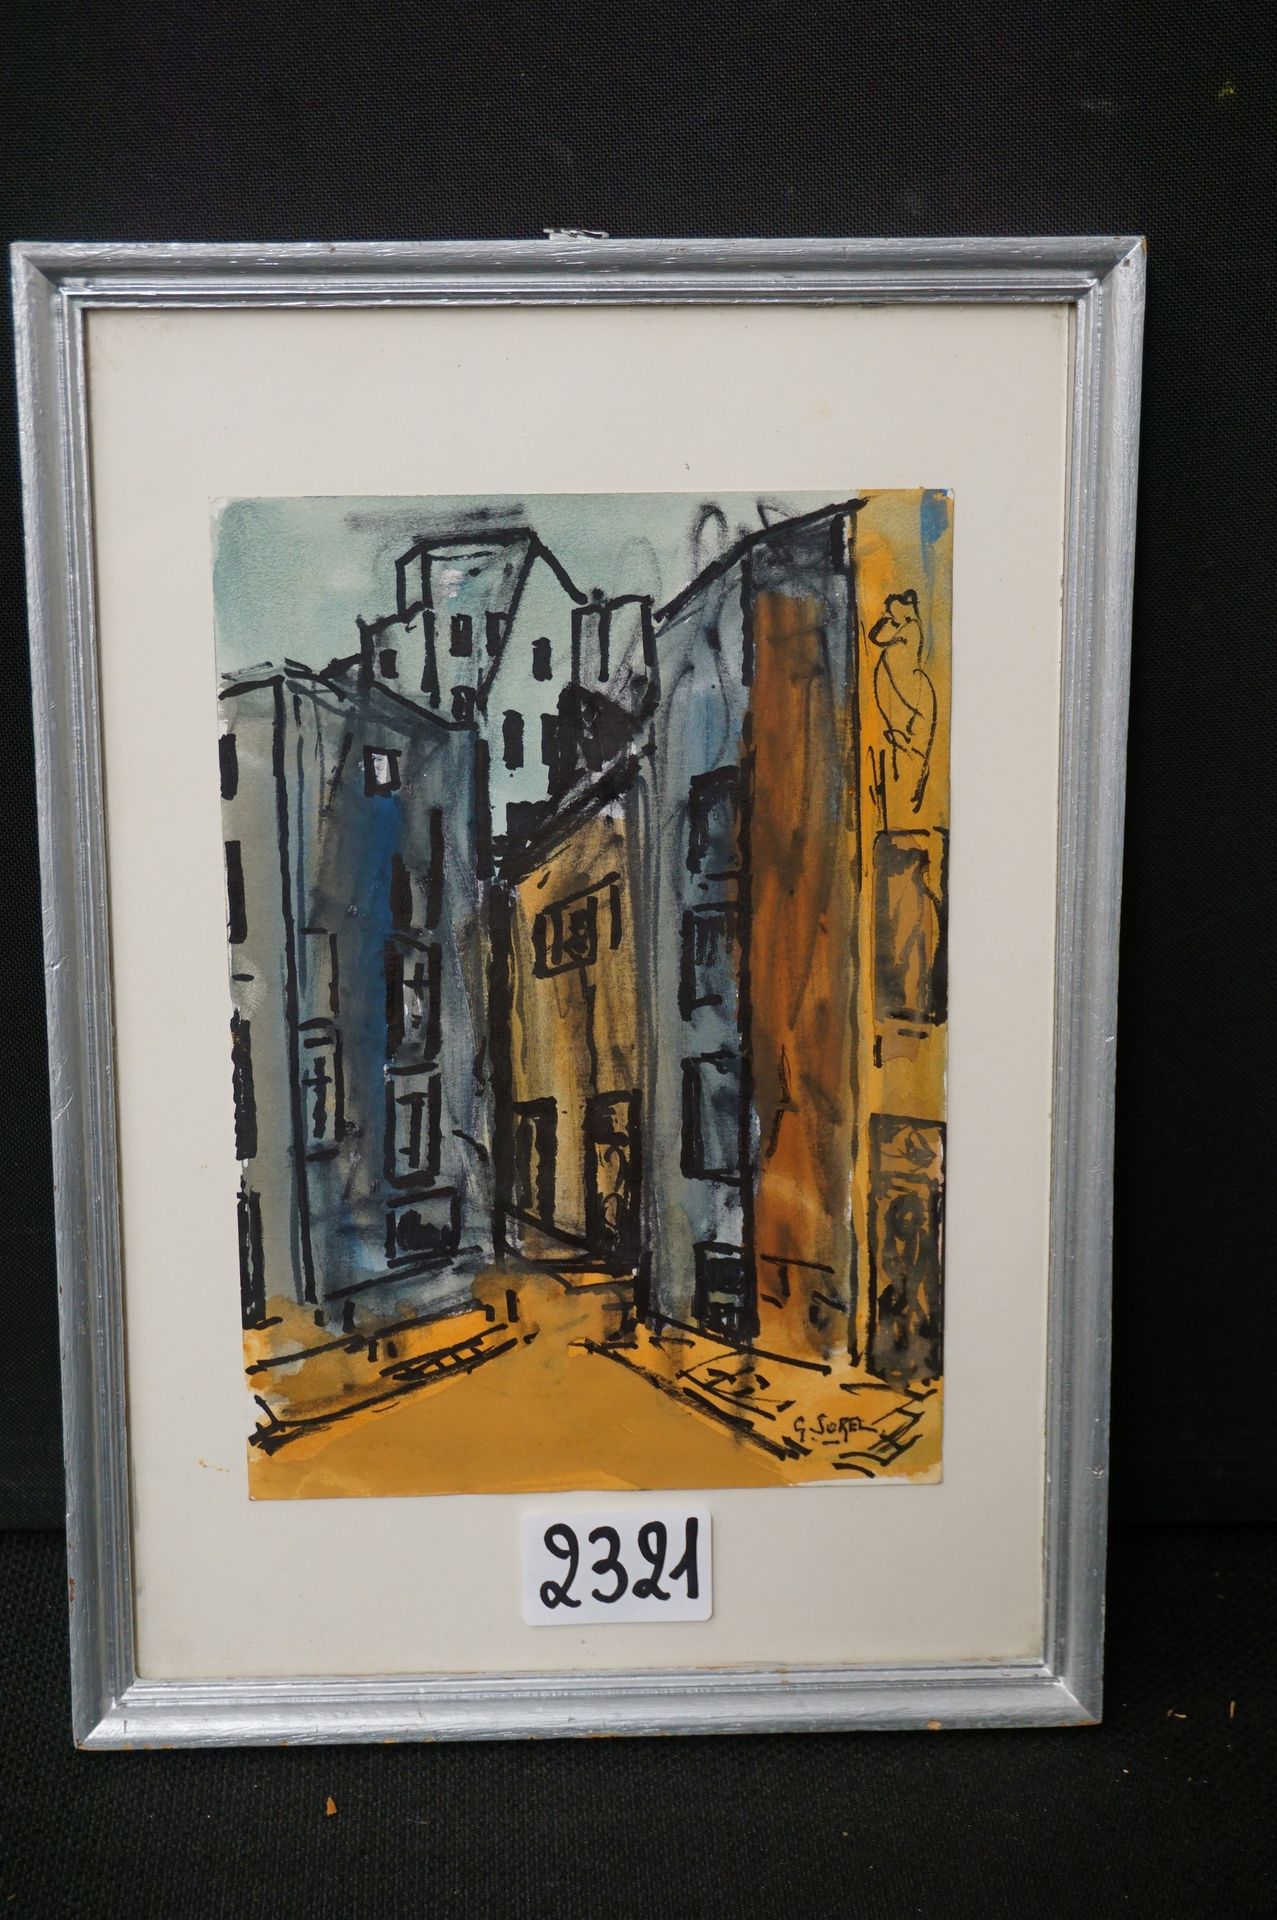 GUSTAAF SOREL (1905 - 1981) "Facades" - Watercolor - Signed - 21 x 14 cm